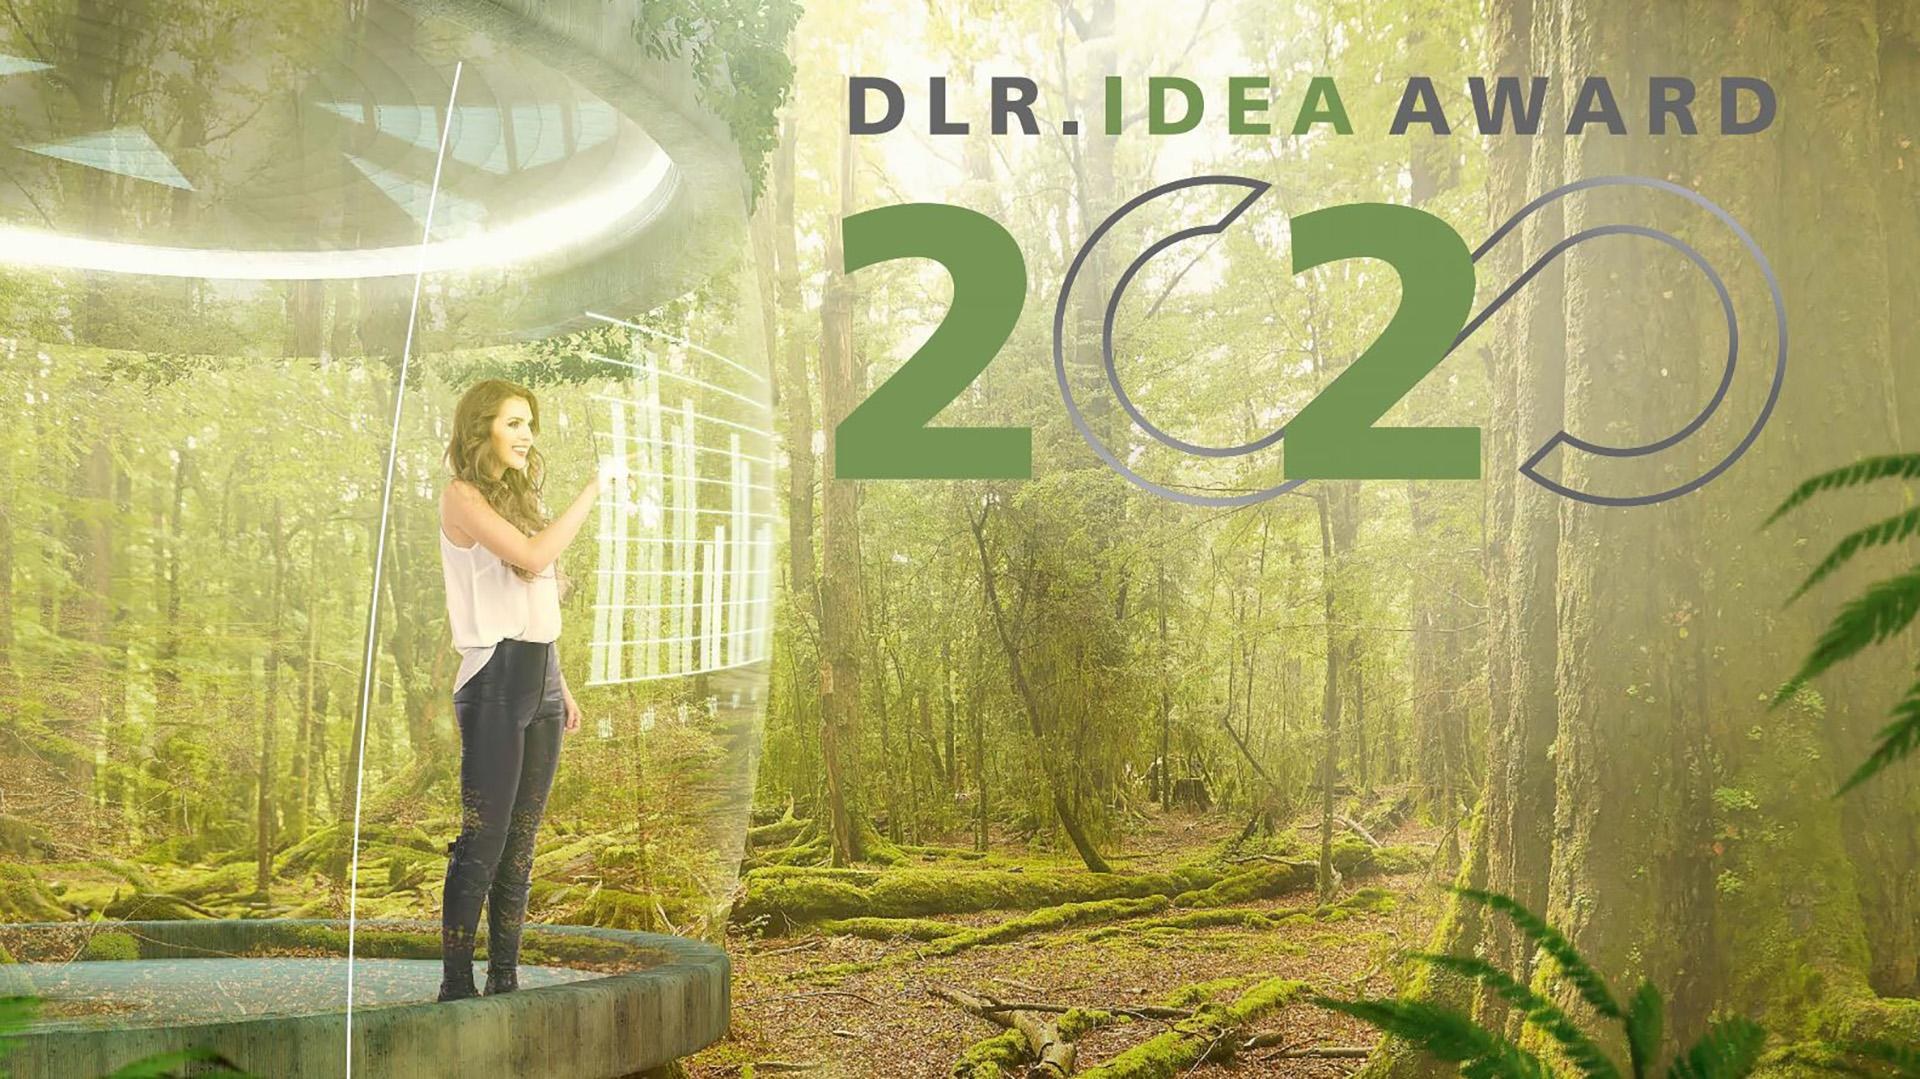 DLR.Idea Award